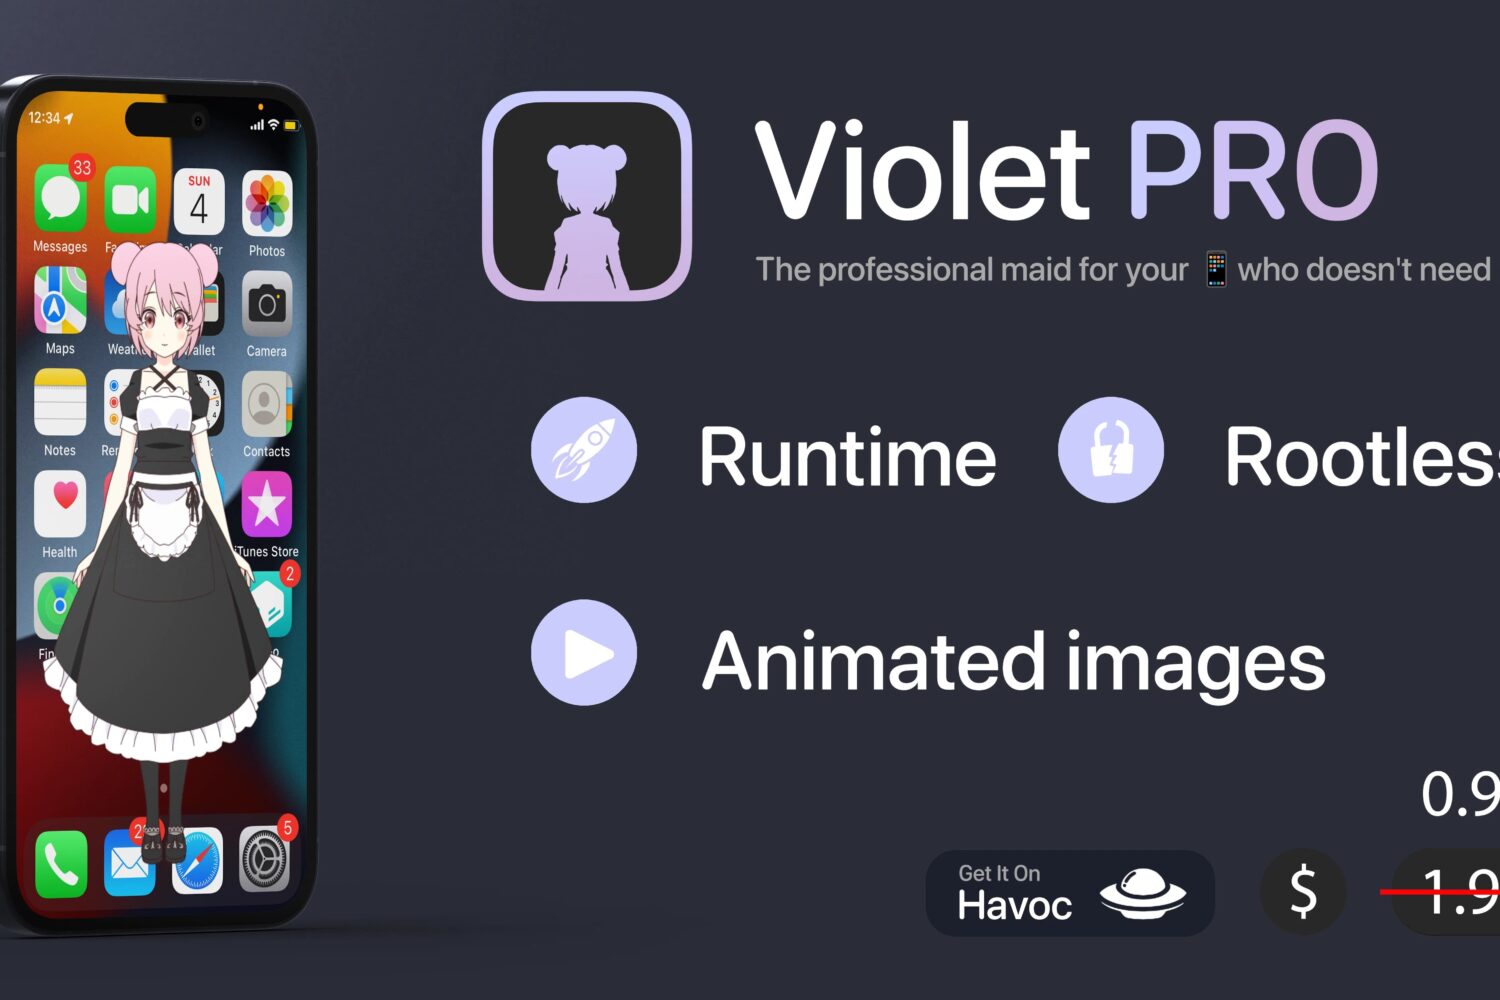 Violet Pro banner image.